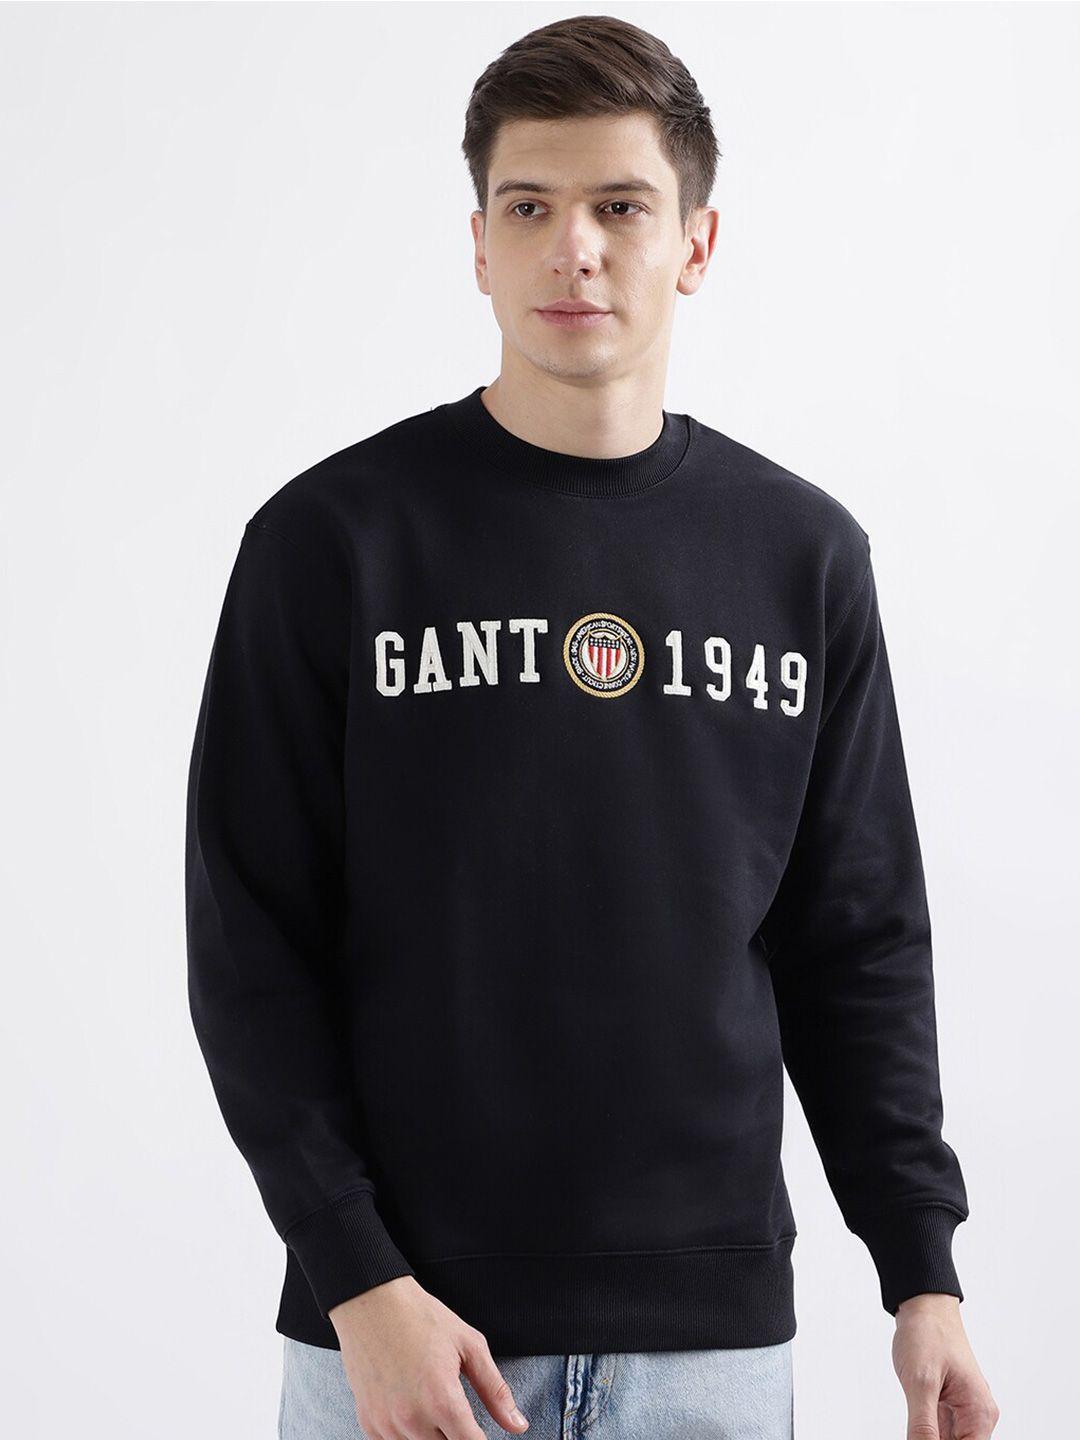 gant typography printed round neck pullover sweatshirt